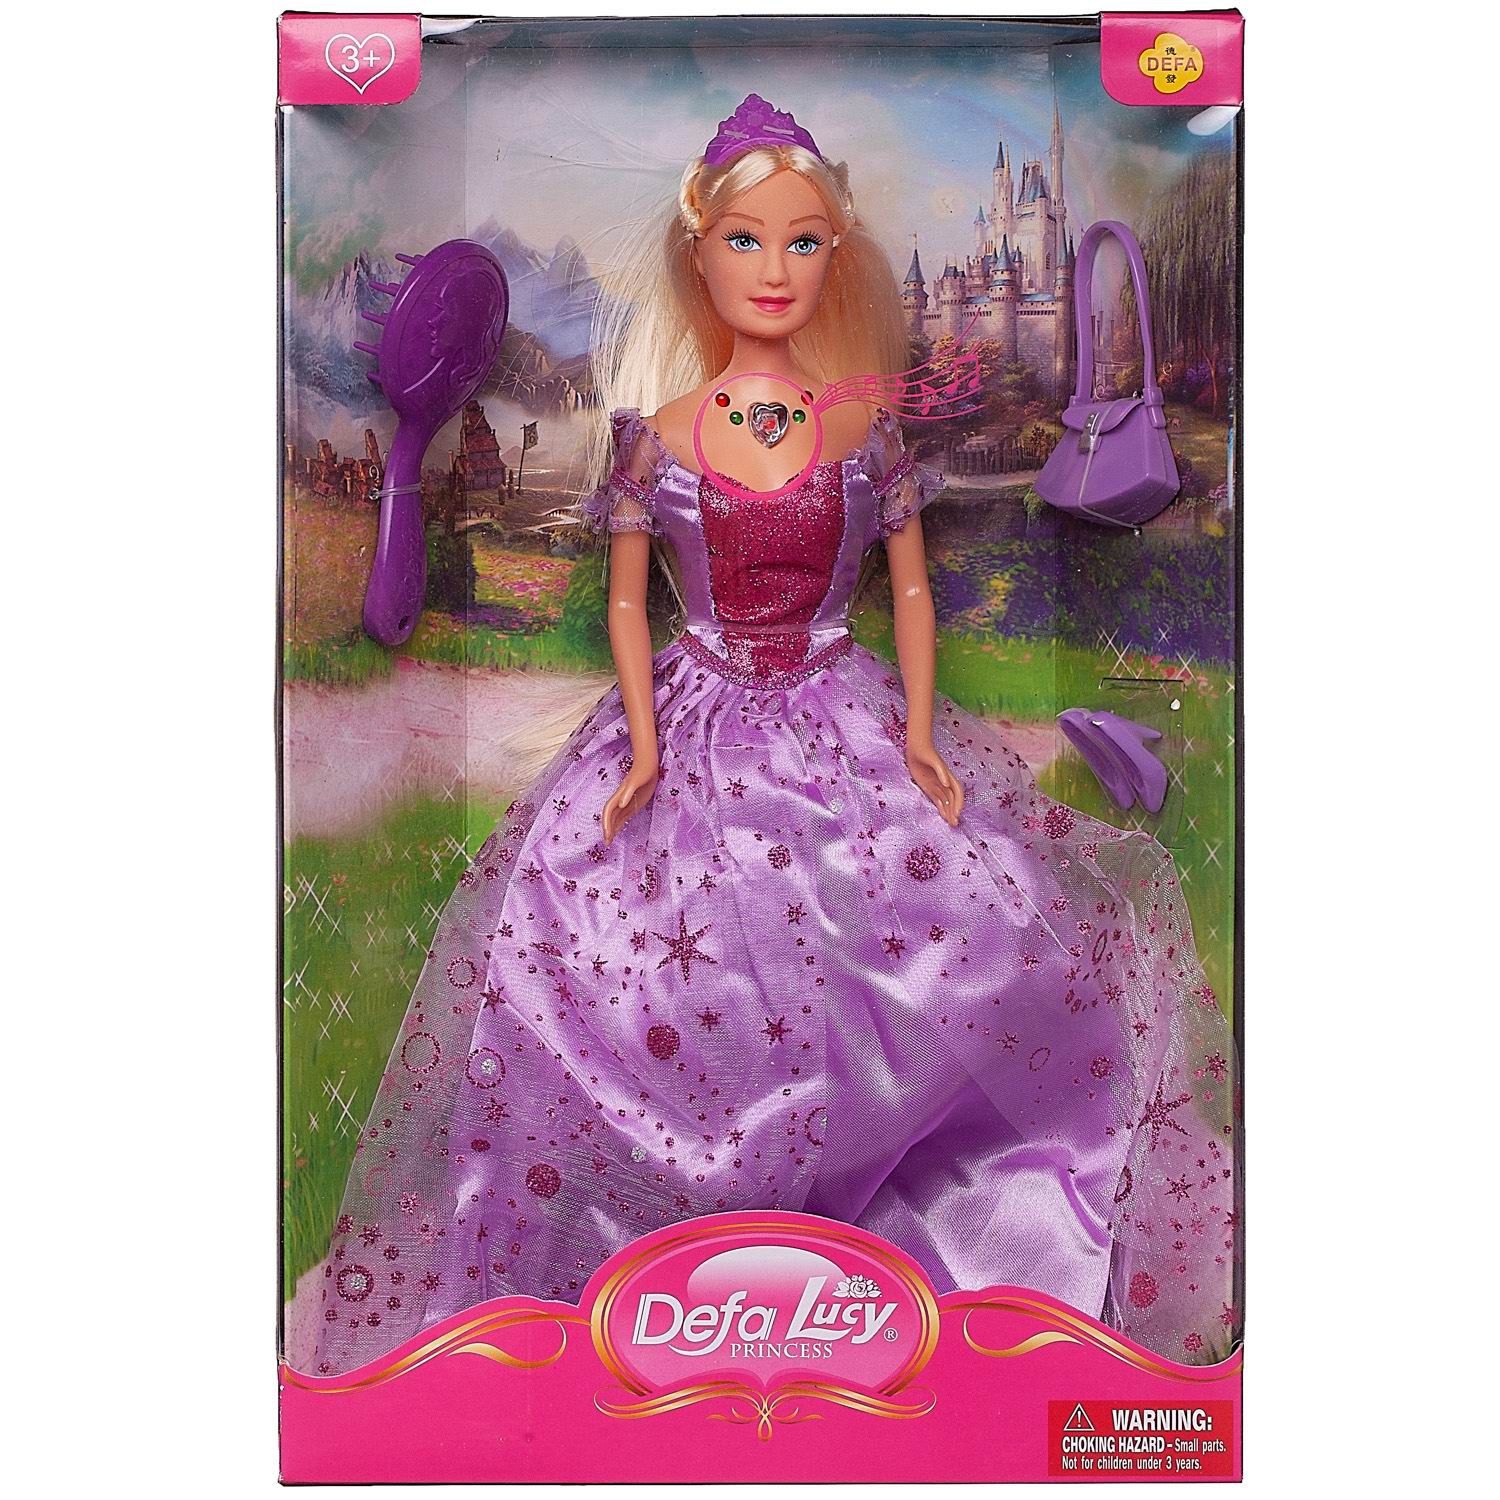 Кукла Defa Lucy Принцесса в фиолетовом платье в наборе с игровыми предметами, 29 см defa кукла красивая принцесса 29 см